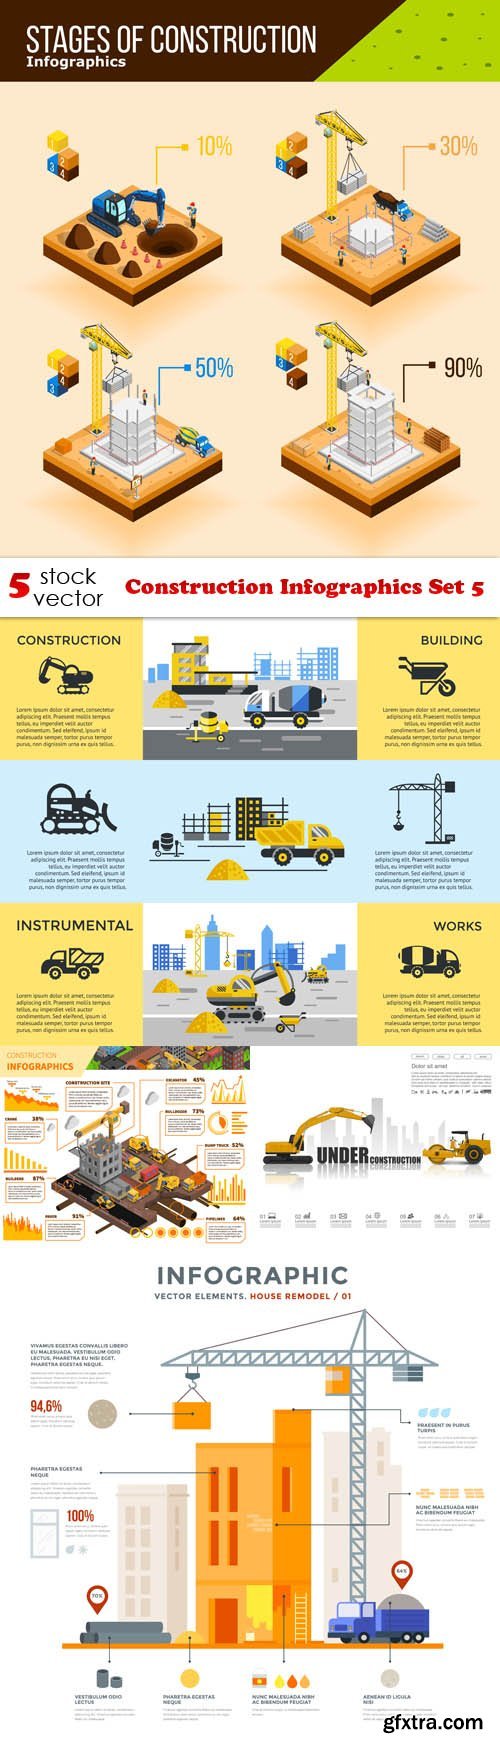 Vectors - Construction Infographics Set 5